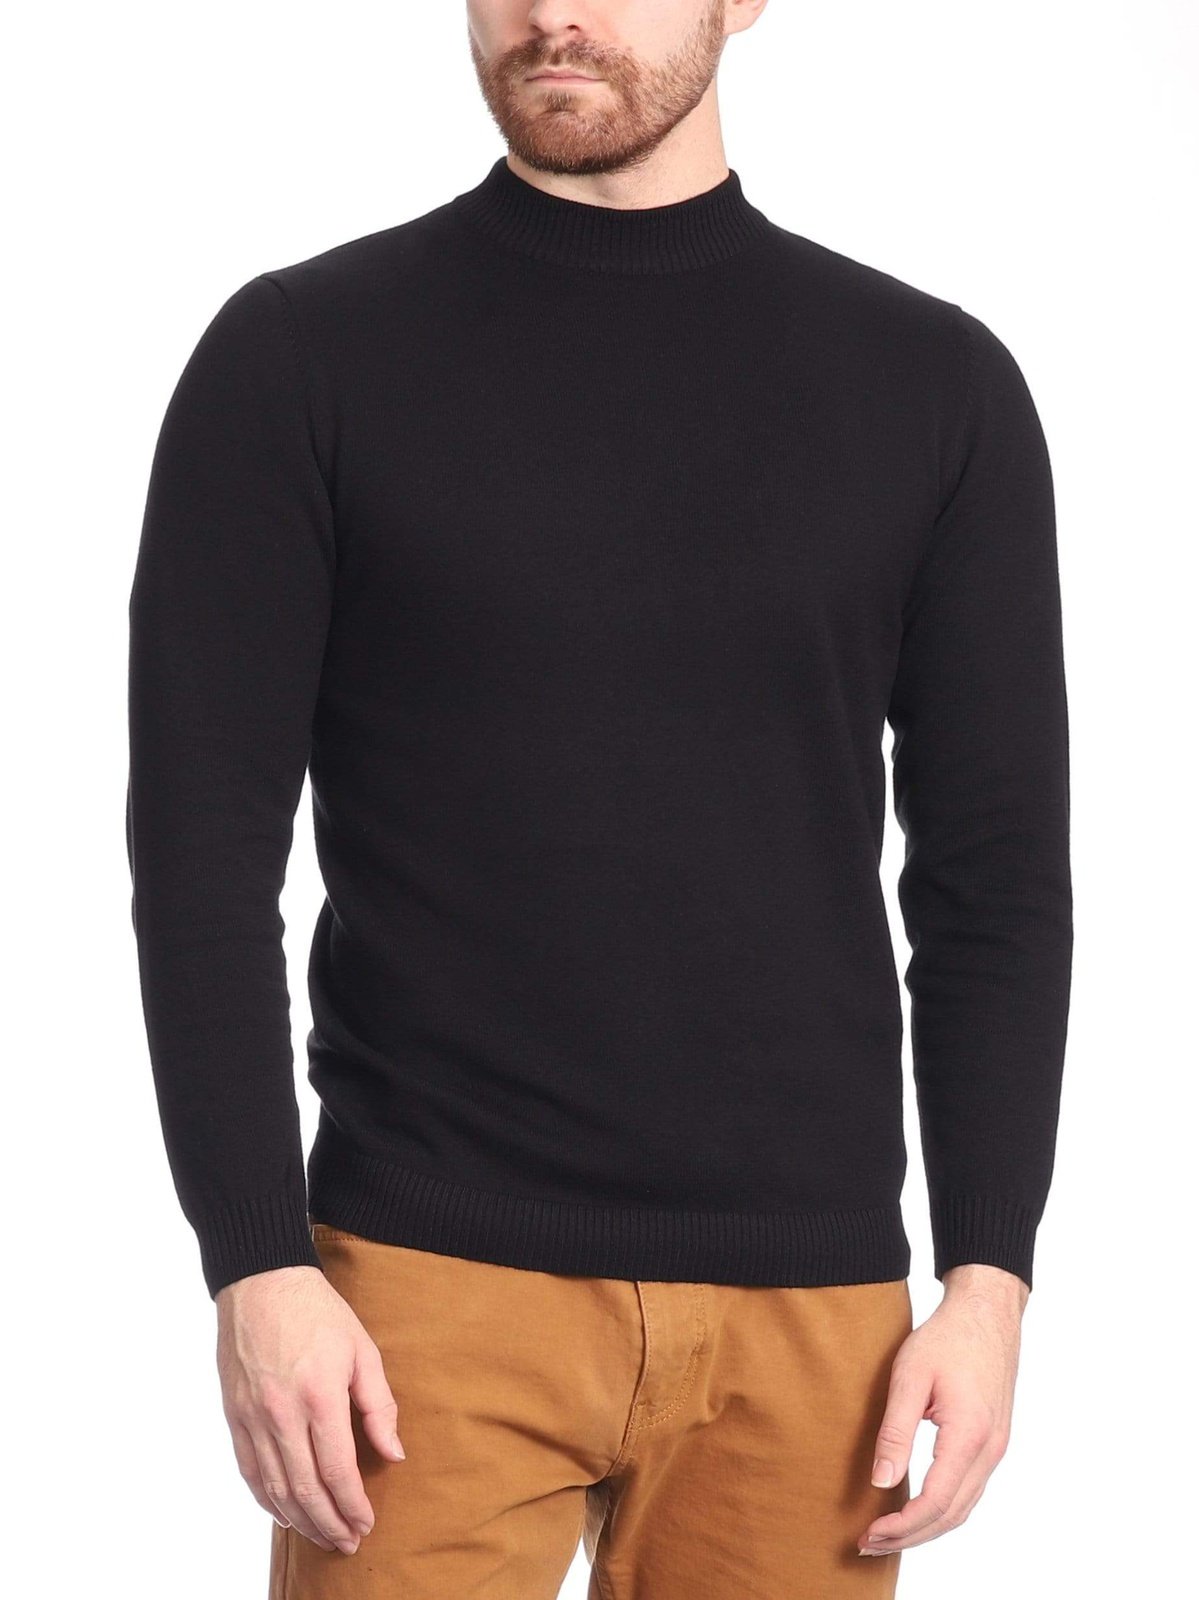 Shop Arthur Black Black Classic Fit Sweater | The Suit Depot